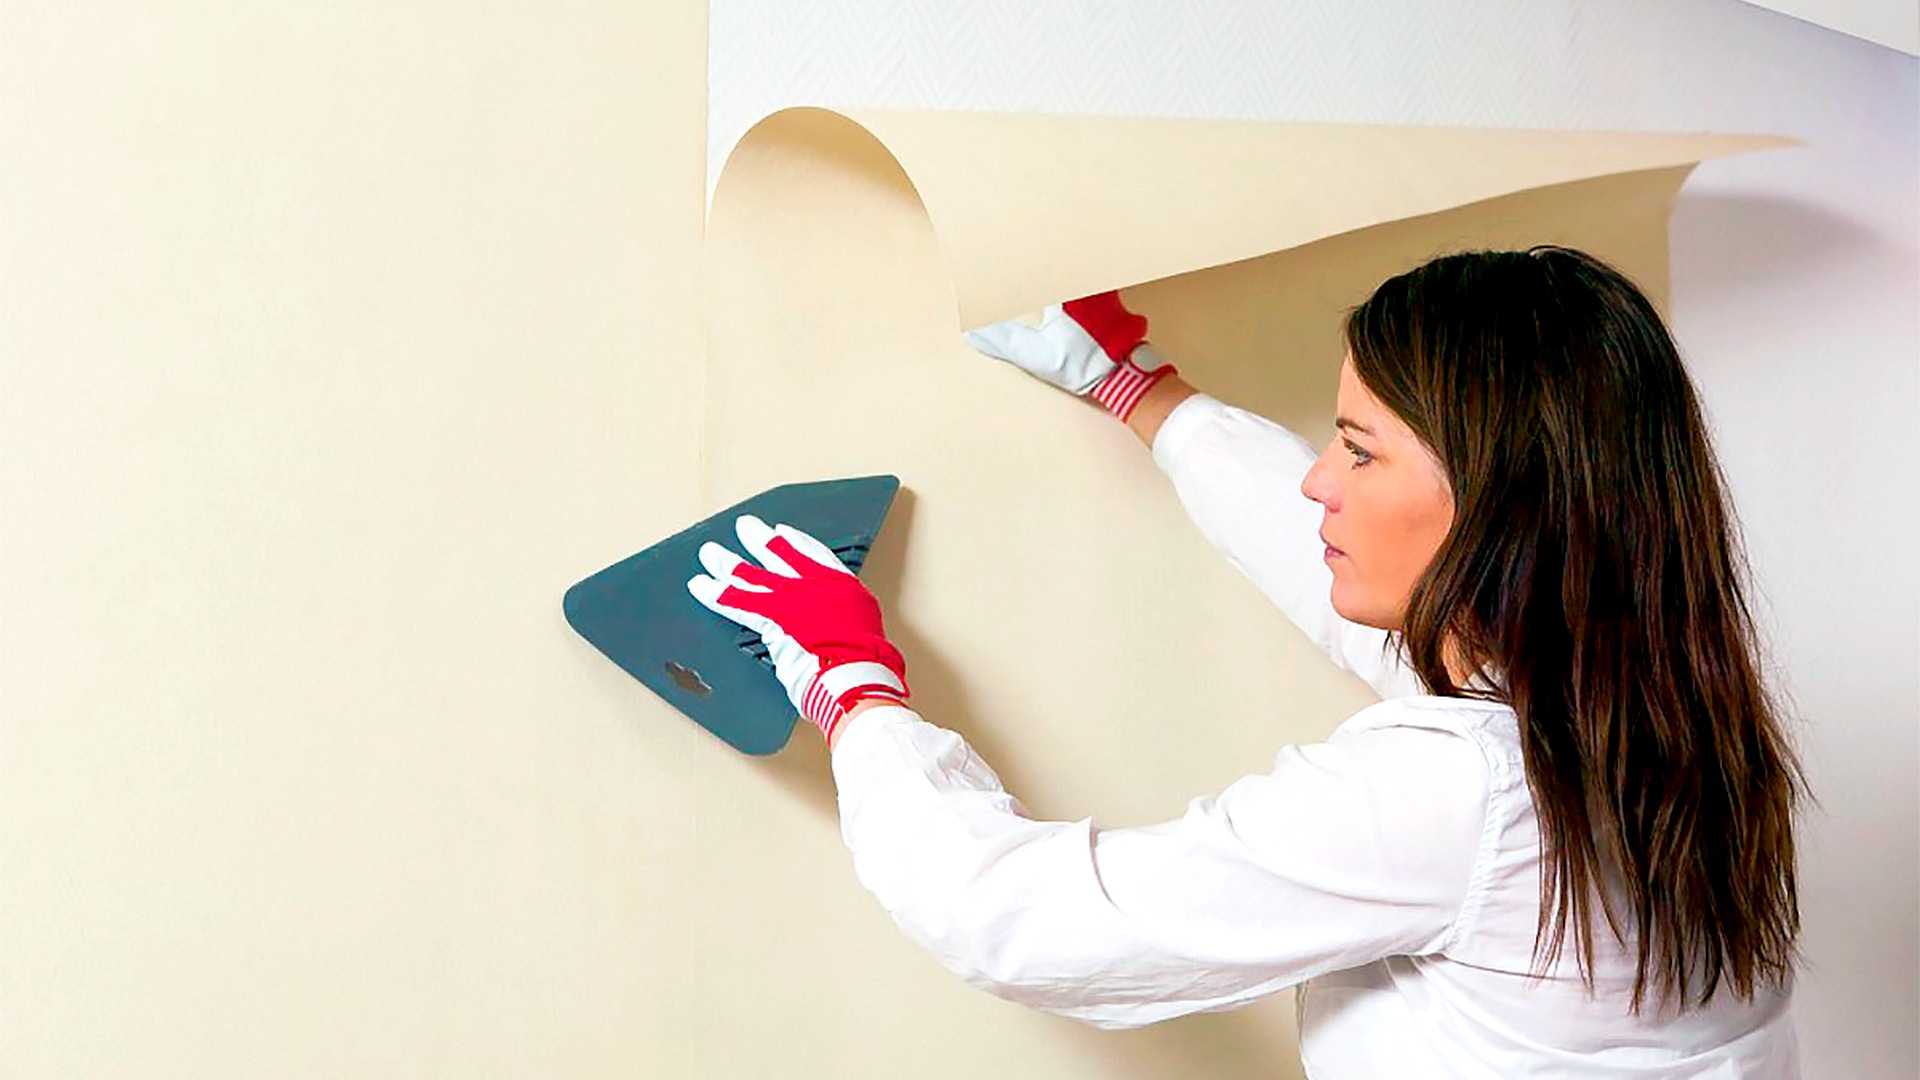 Подготовка стен под покраску: выравниваем новые и старые стены